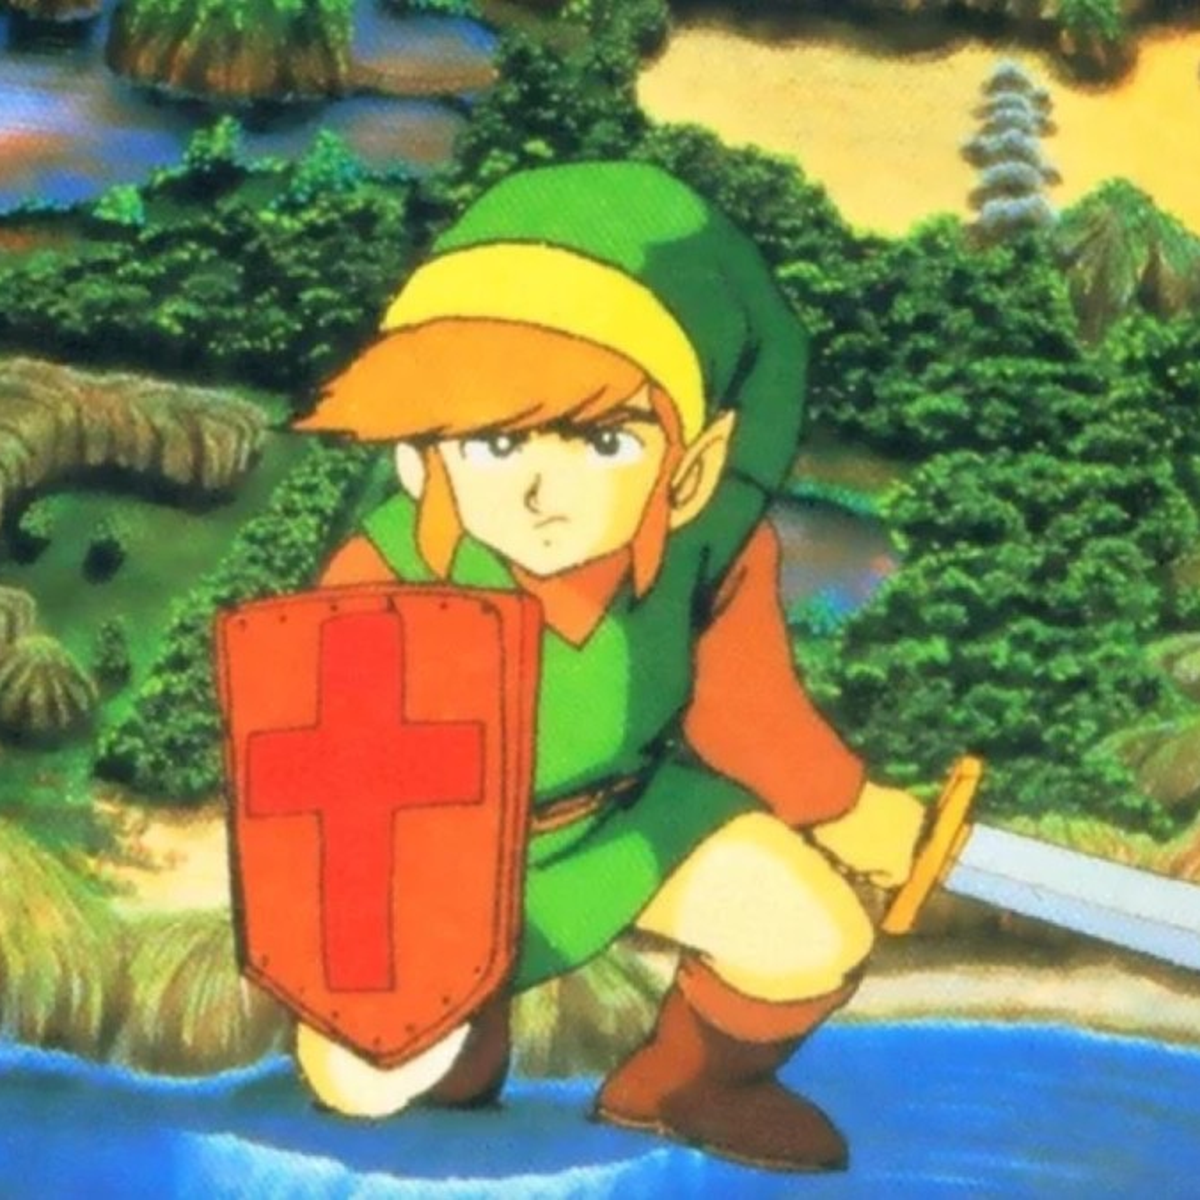 The legend of The Legend of Zelda